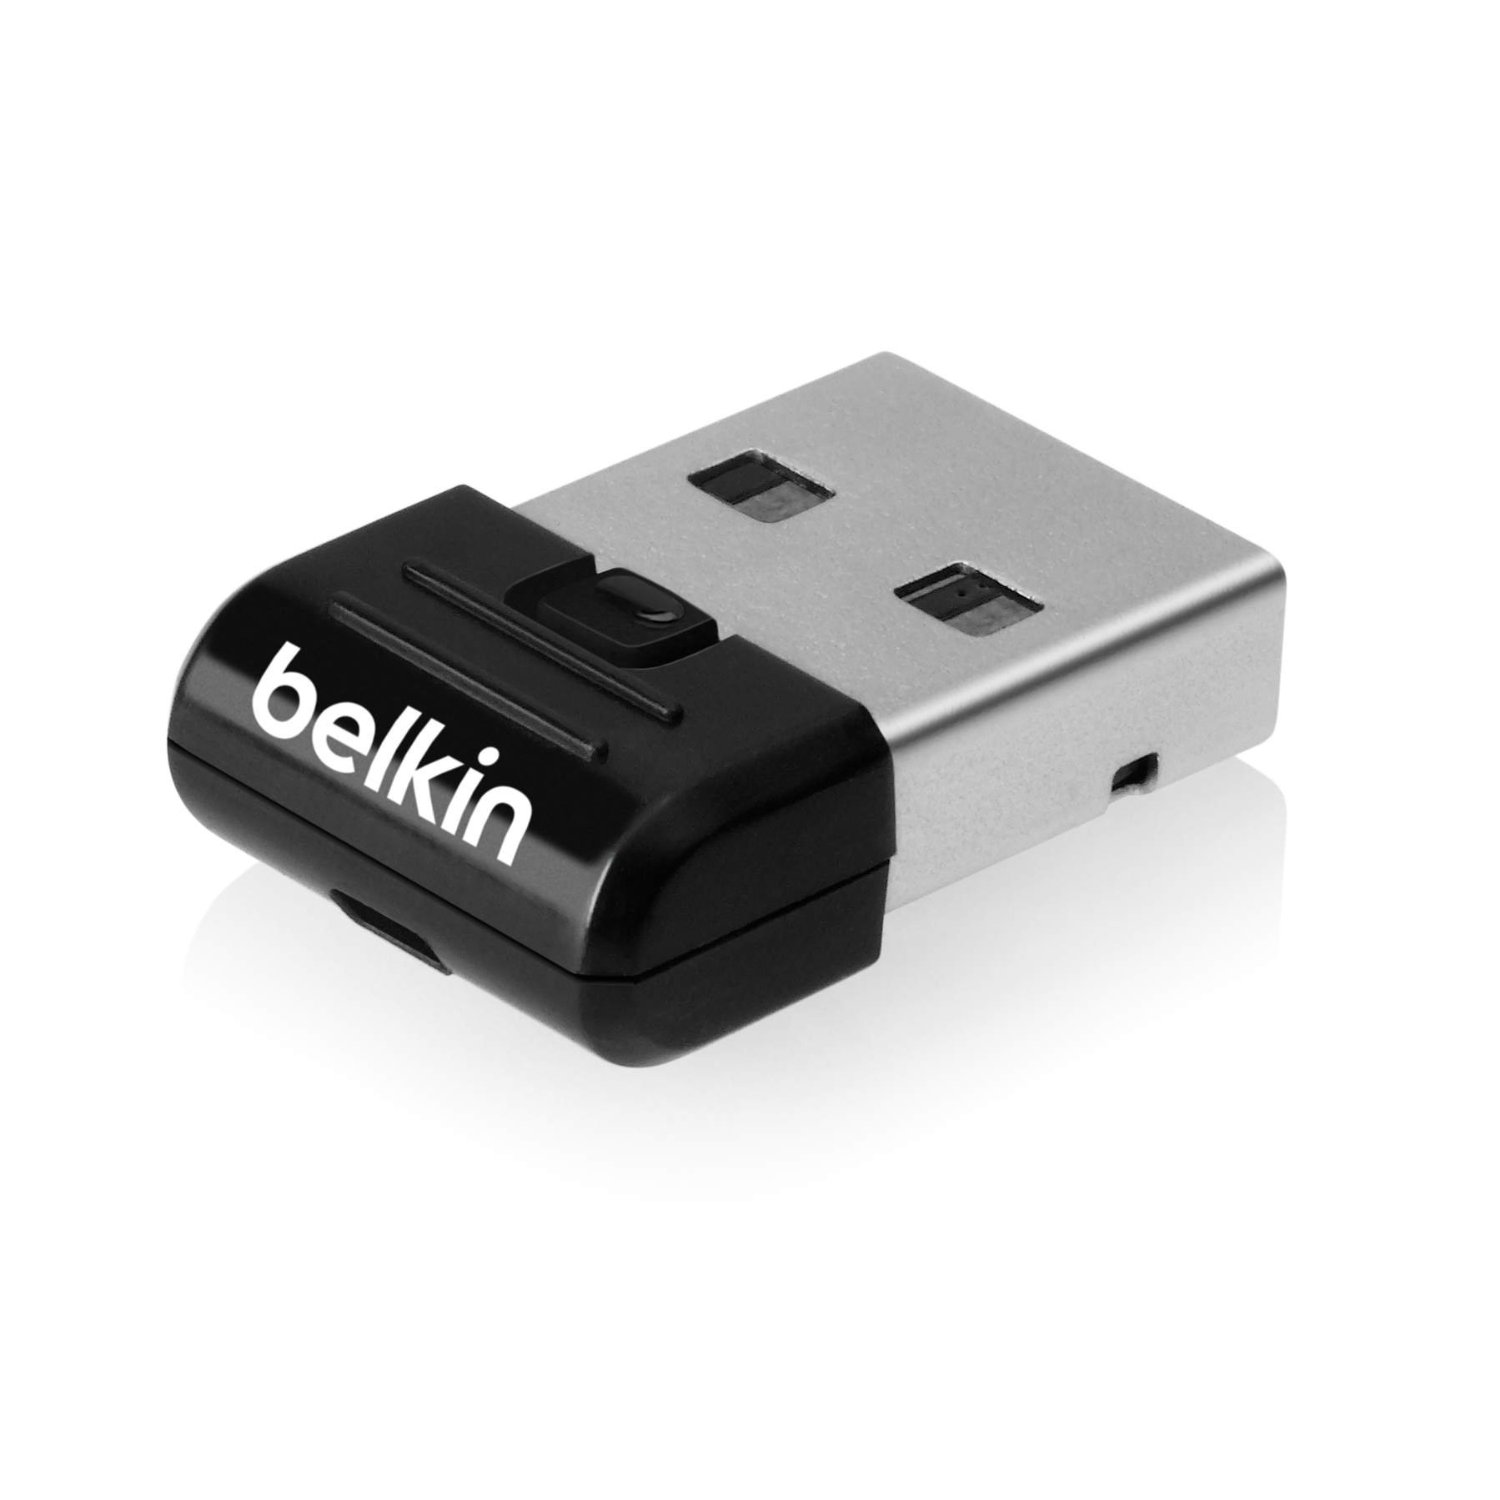 Belkin F8T065tt Mini Bluetooth 4.0 USB Adapter Dongle For Windows XP Windows 7 & Windows 8